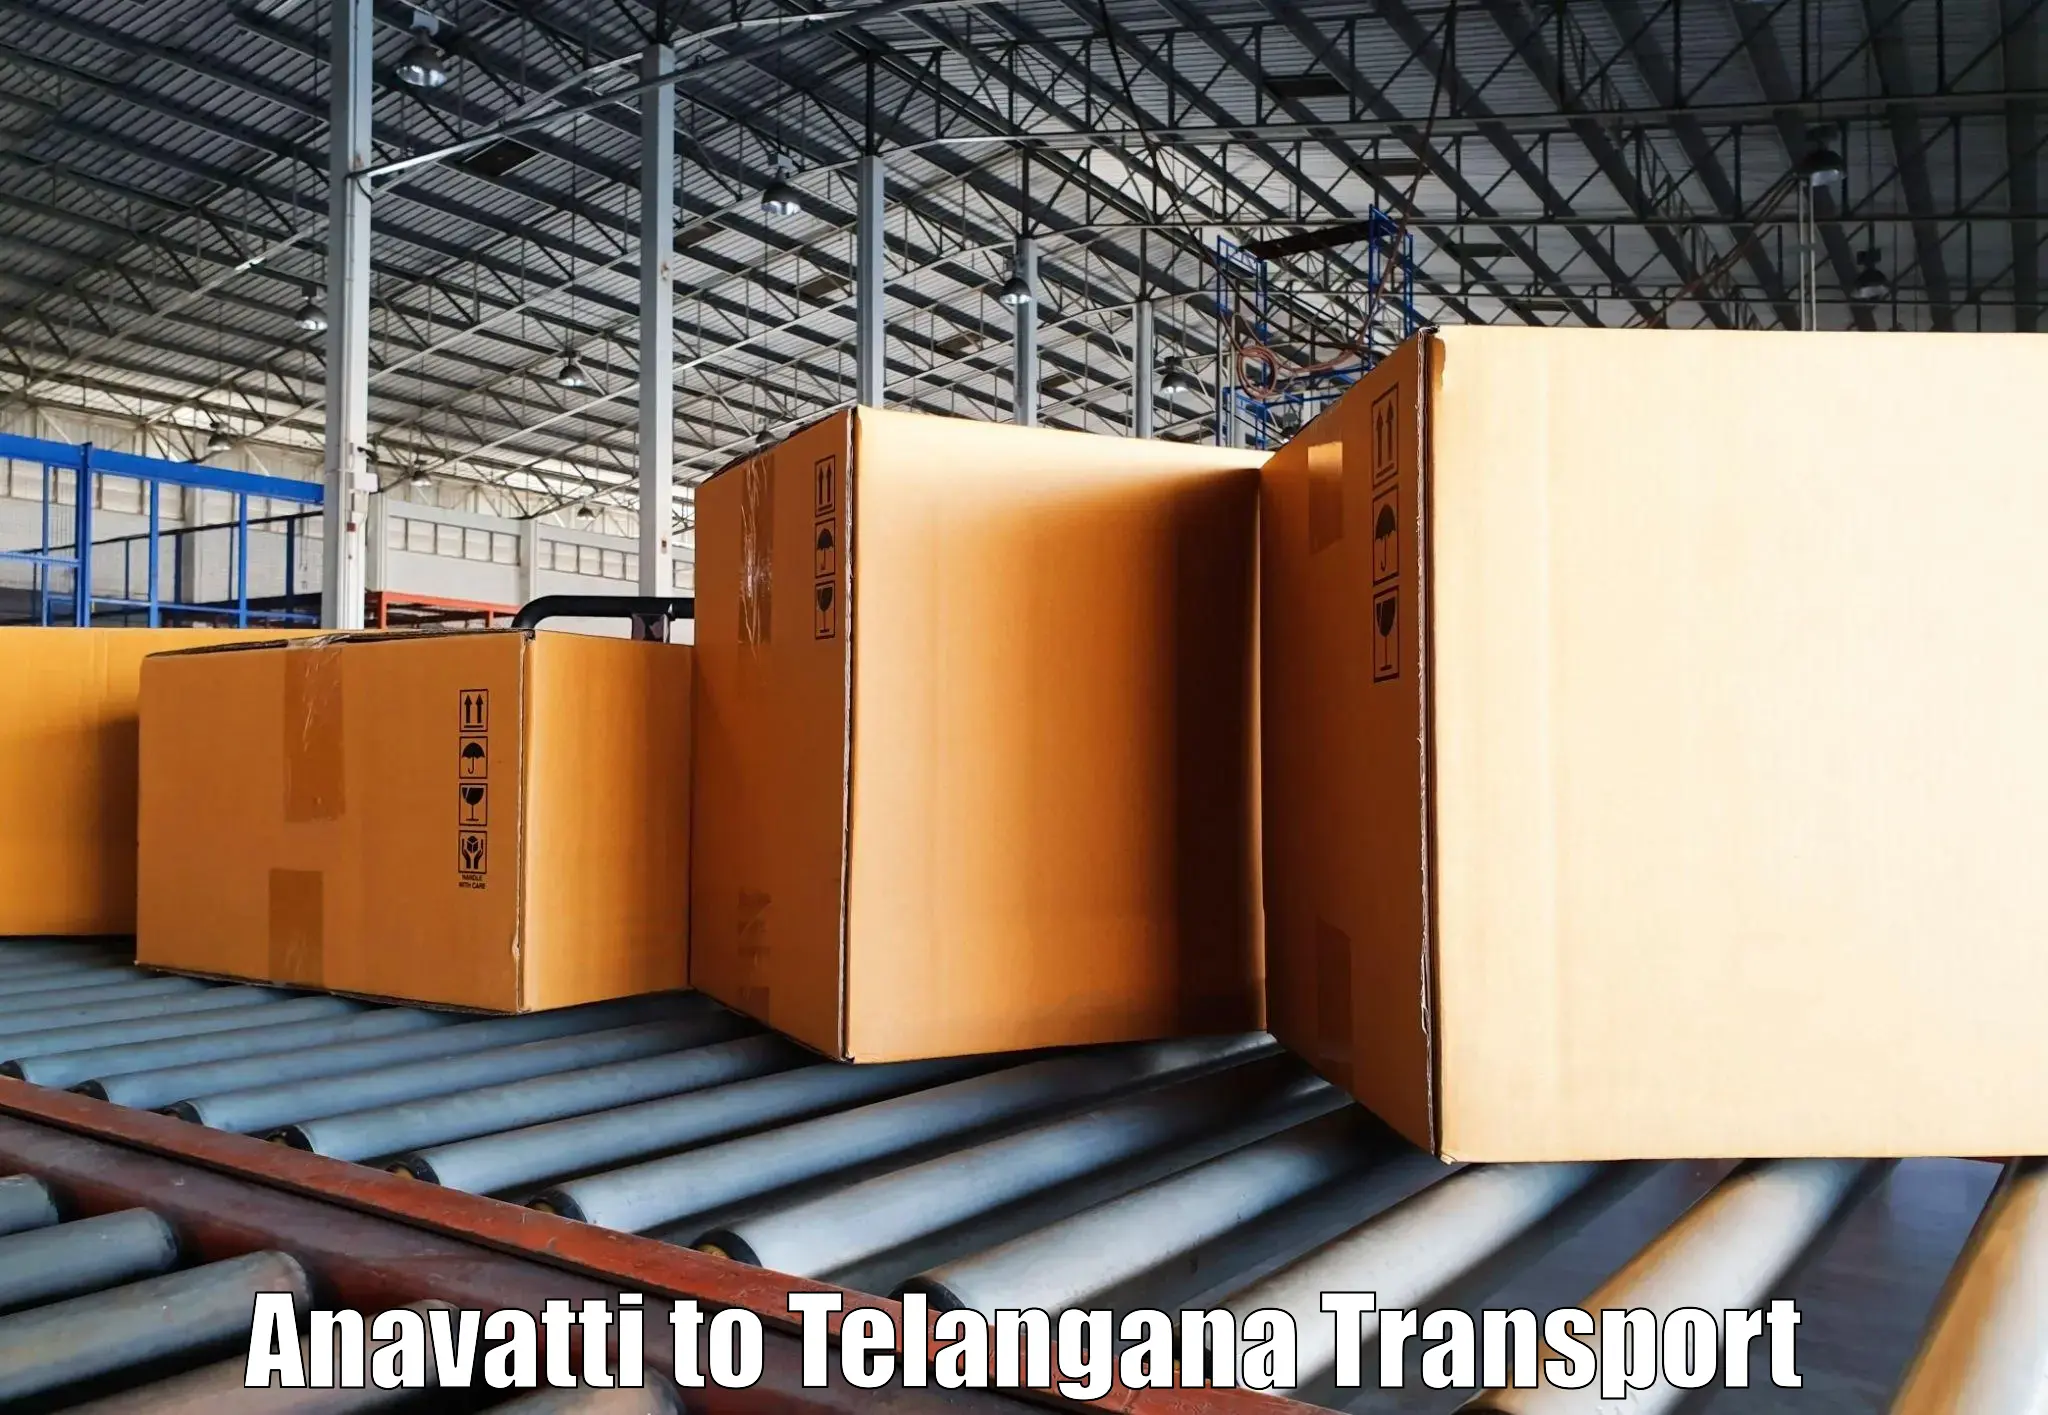 Container transport service Anavatti to Bellampalli